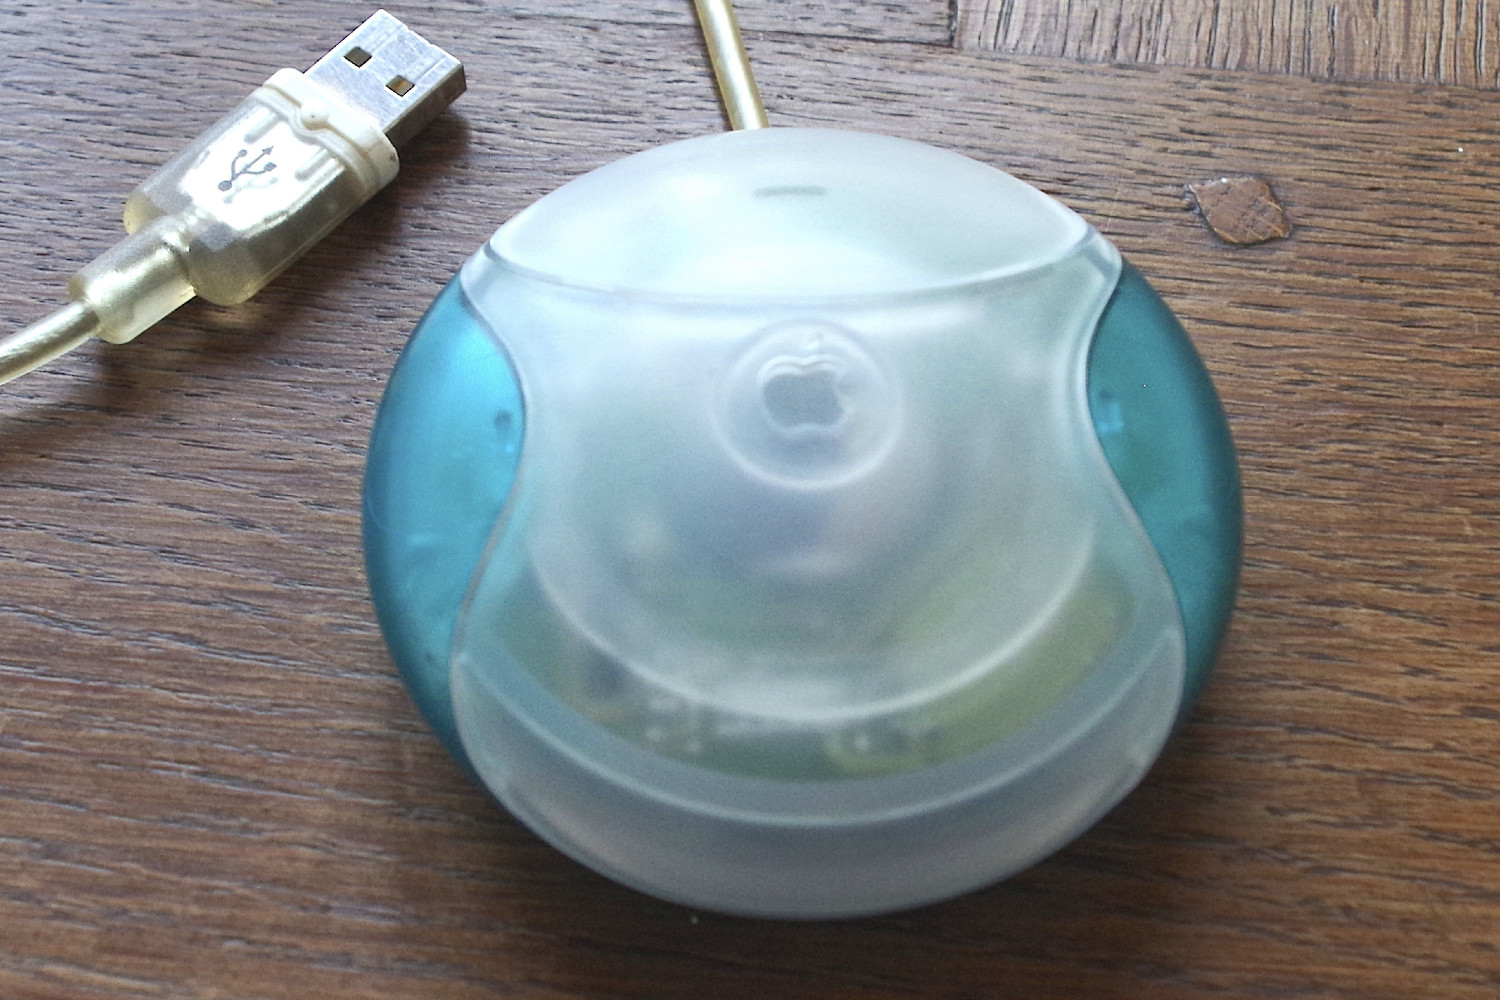 Um mouse USB da Apple, conhecido como mouse "disco de hóquei", do iMac G3.  O mouse está sobre uma mesa com o cabo USB ao lado.